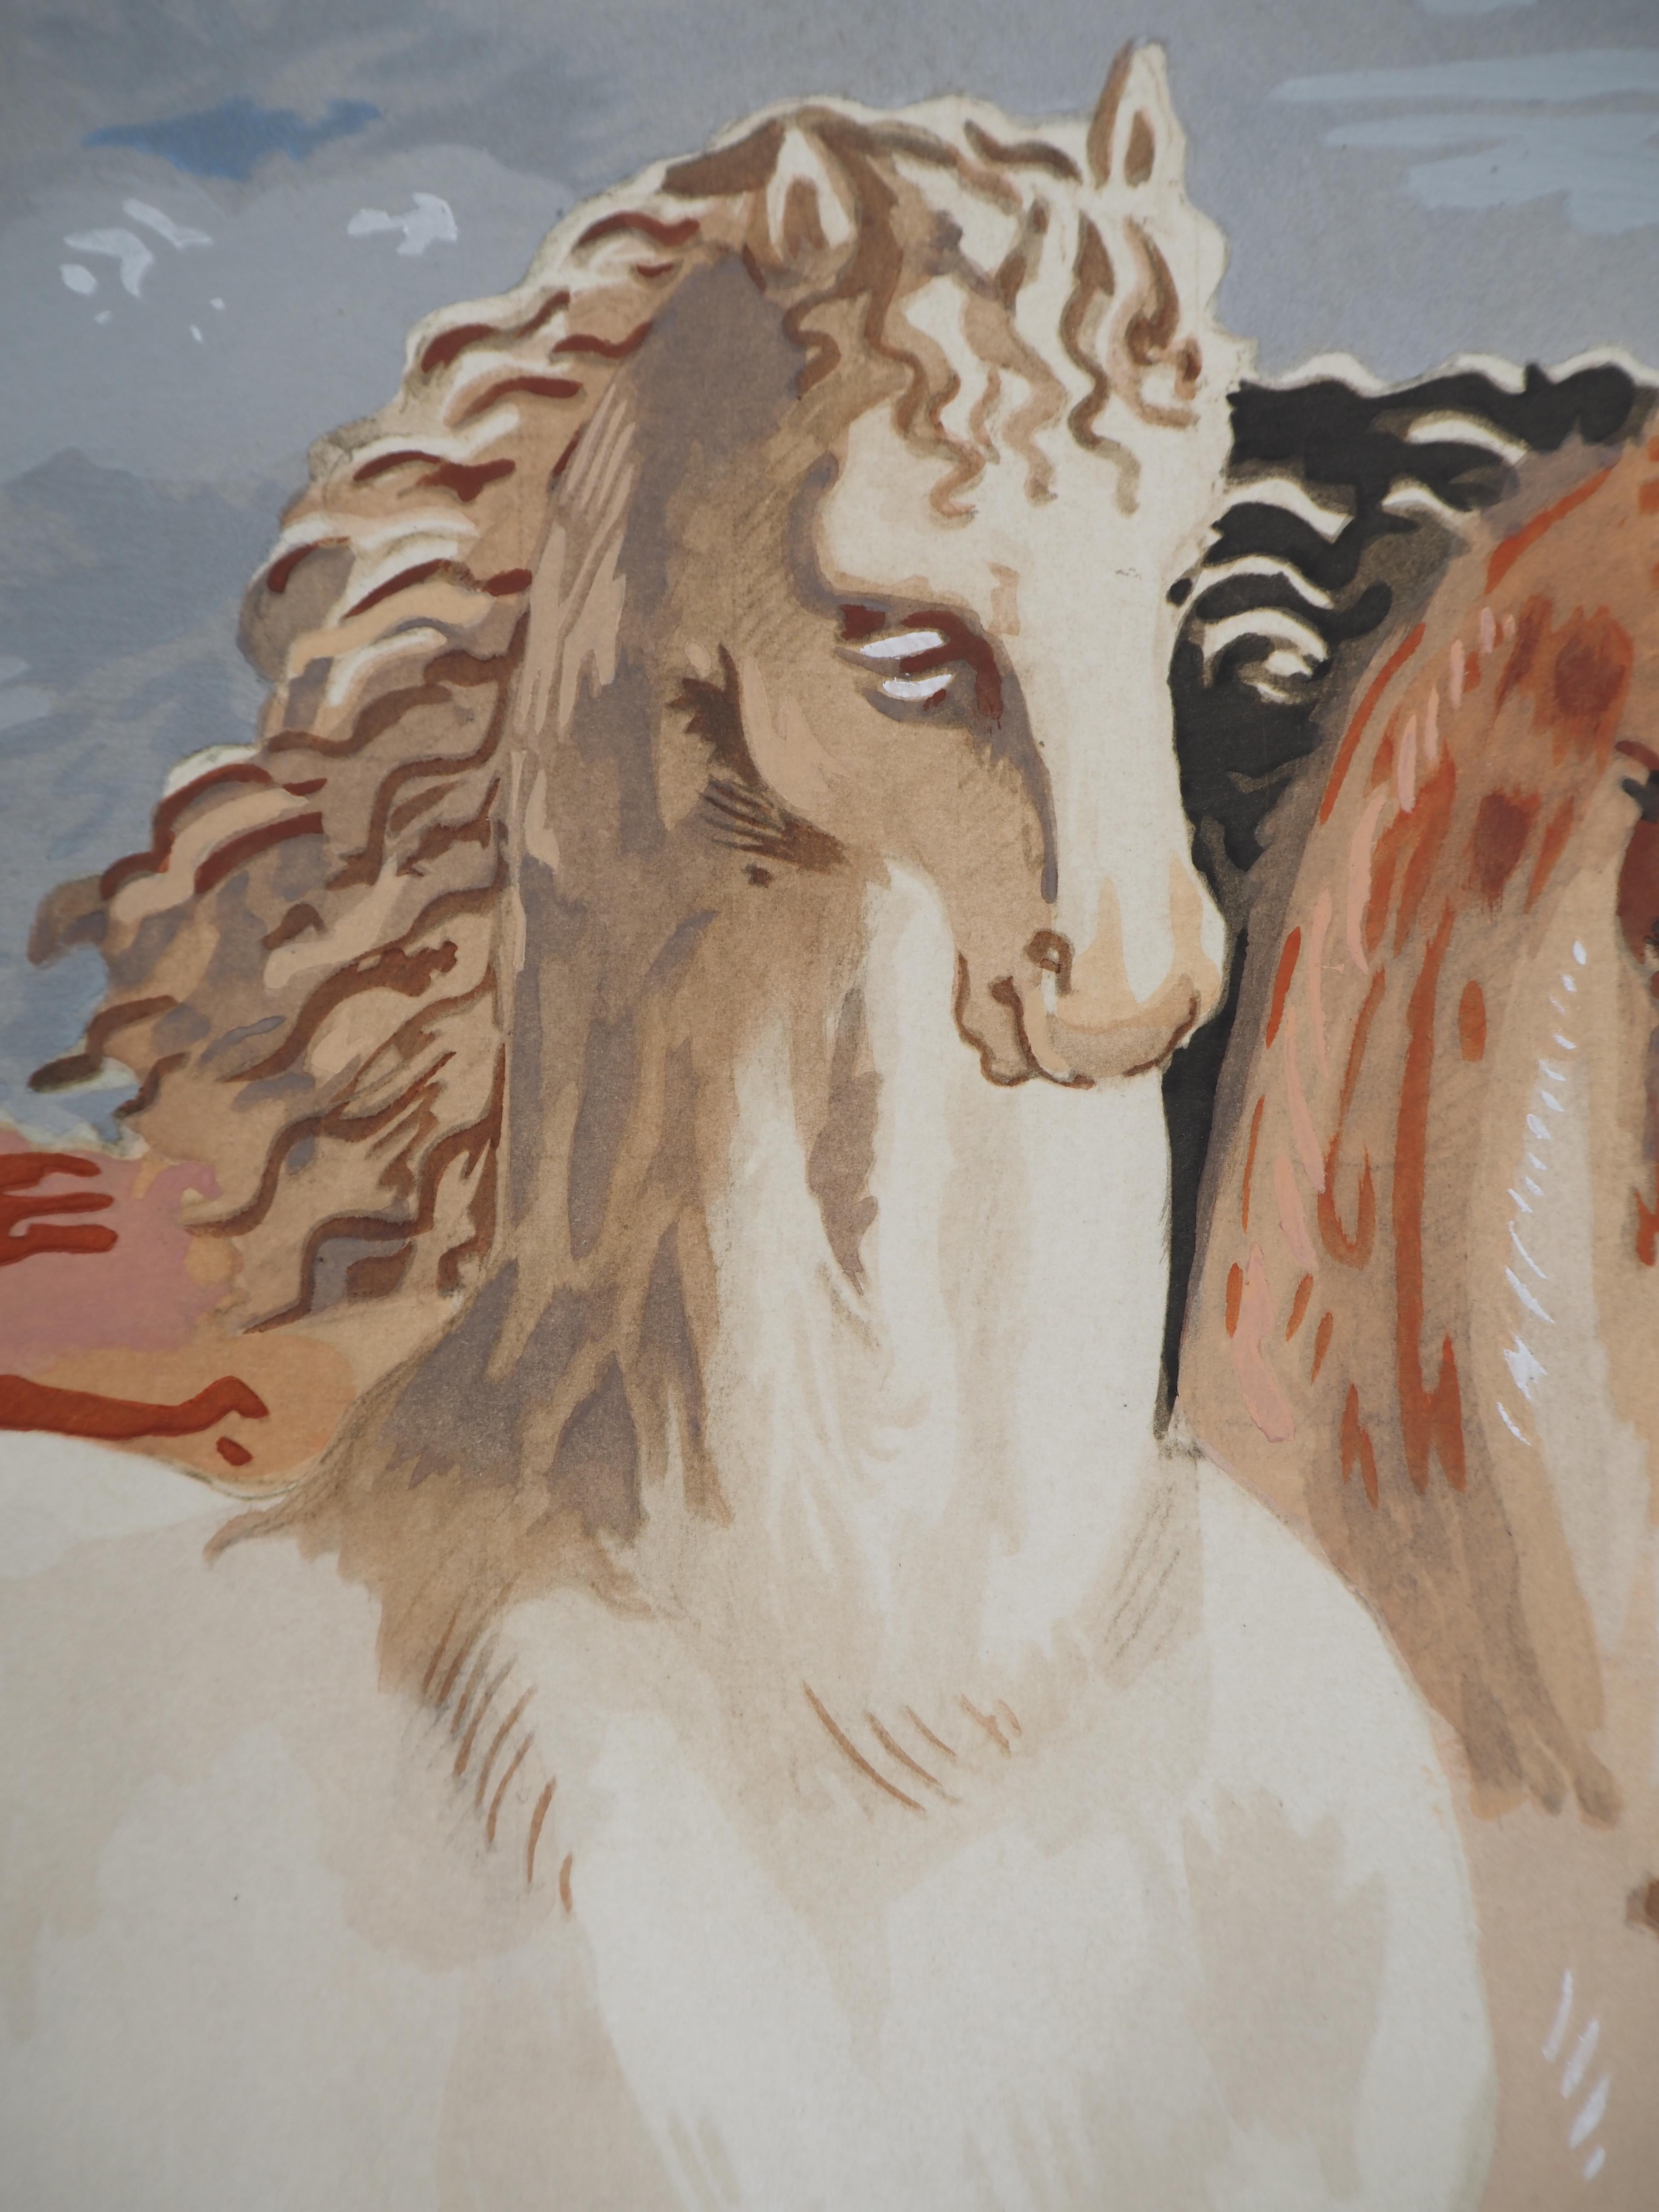 Giorgio de CHIRICO
Pferde in einer mythologischen Landschaft, um 1955

Lithographie und Schablone (Werkstatt Jacomet)
Gedruckte Unterschrift auf der Platte
Auf hellem Vellum 48 x 38 cm (ca. 19 x 15 Zoll)

Sehr guter Zustand, leichte Mängel am Rand